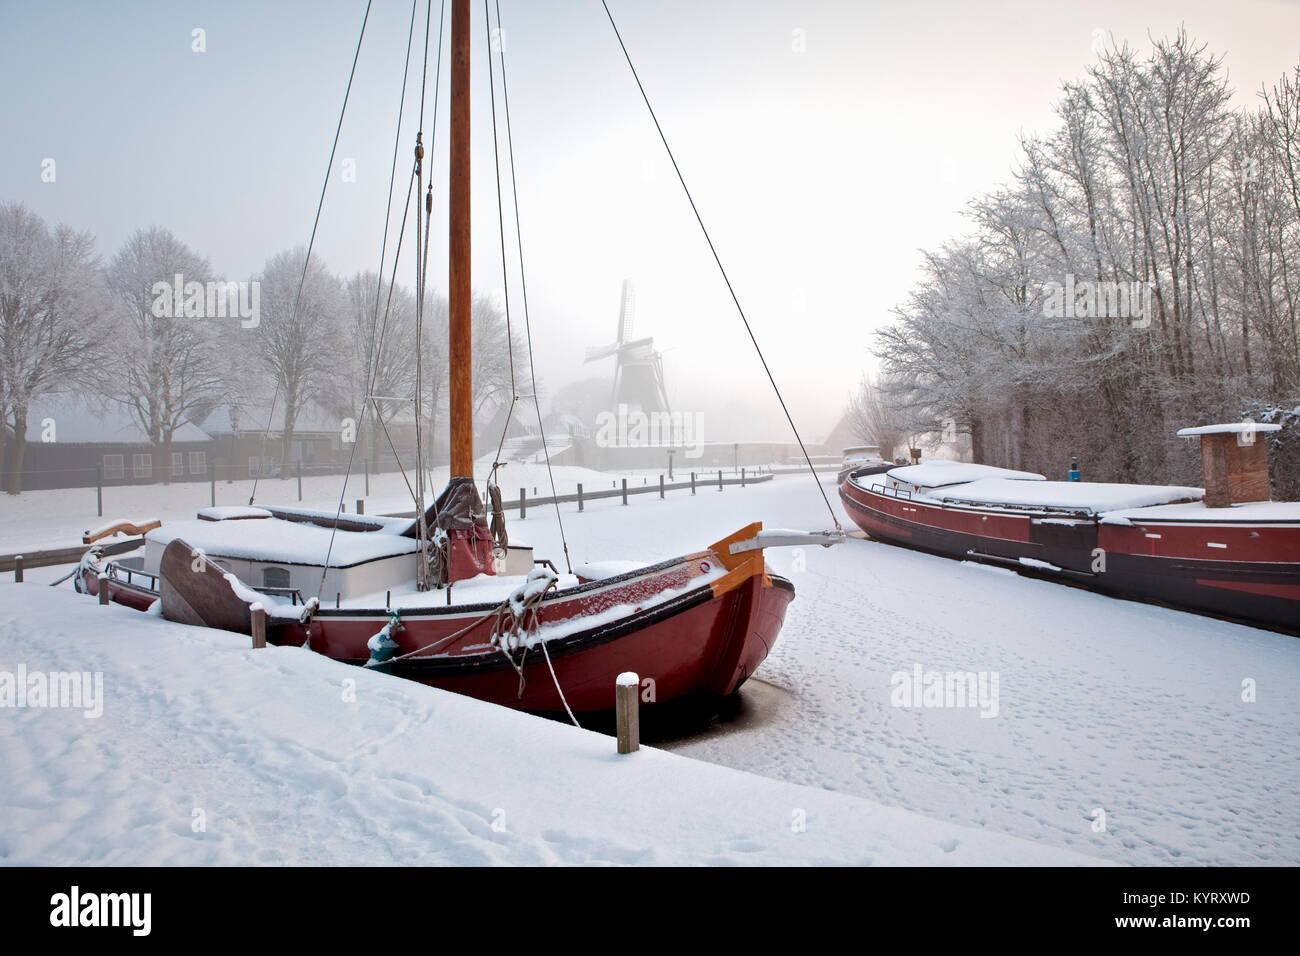 Die Niederlande, Sloten, Traditionelle segeln Frachtschiff in gefrorenen Kanal. Hintergrund Windmühle. Stockfoto